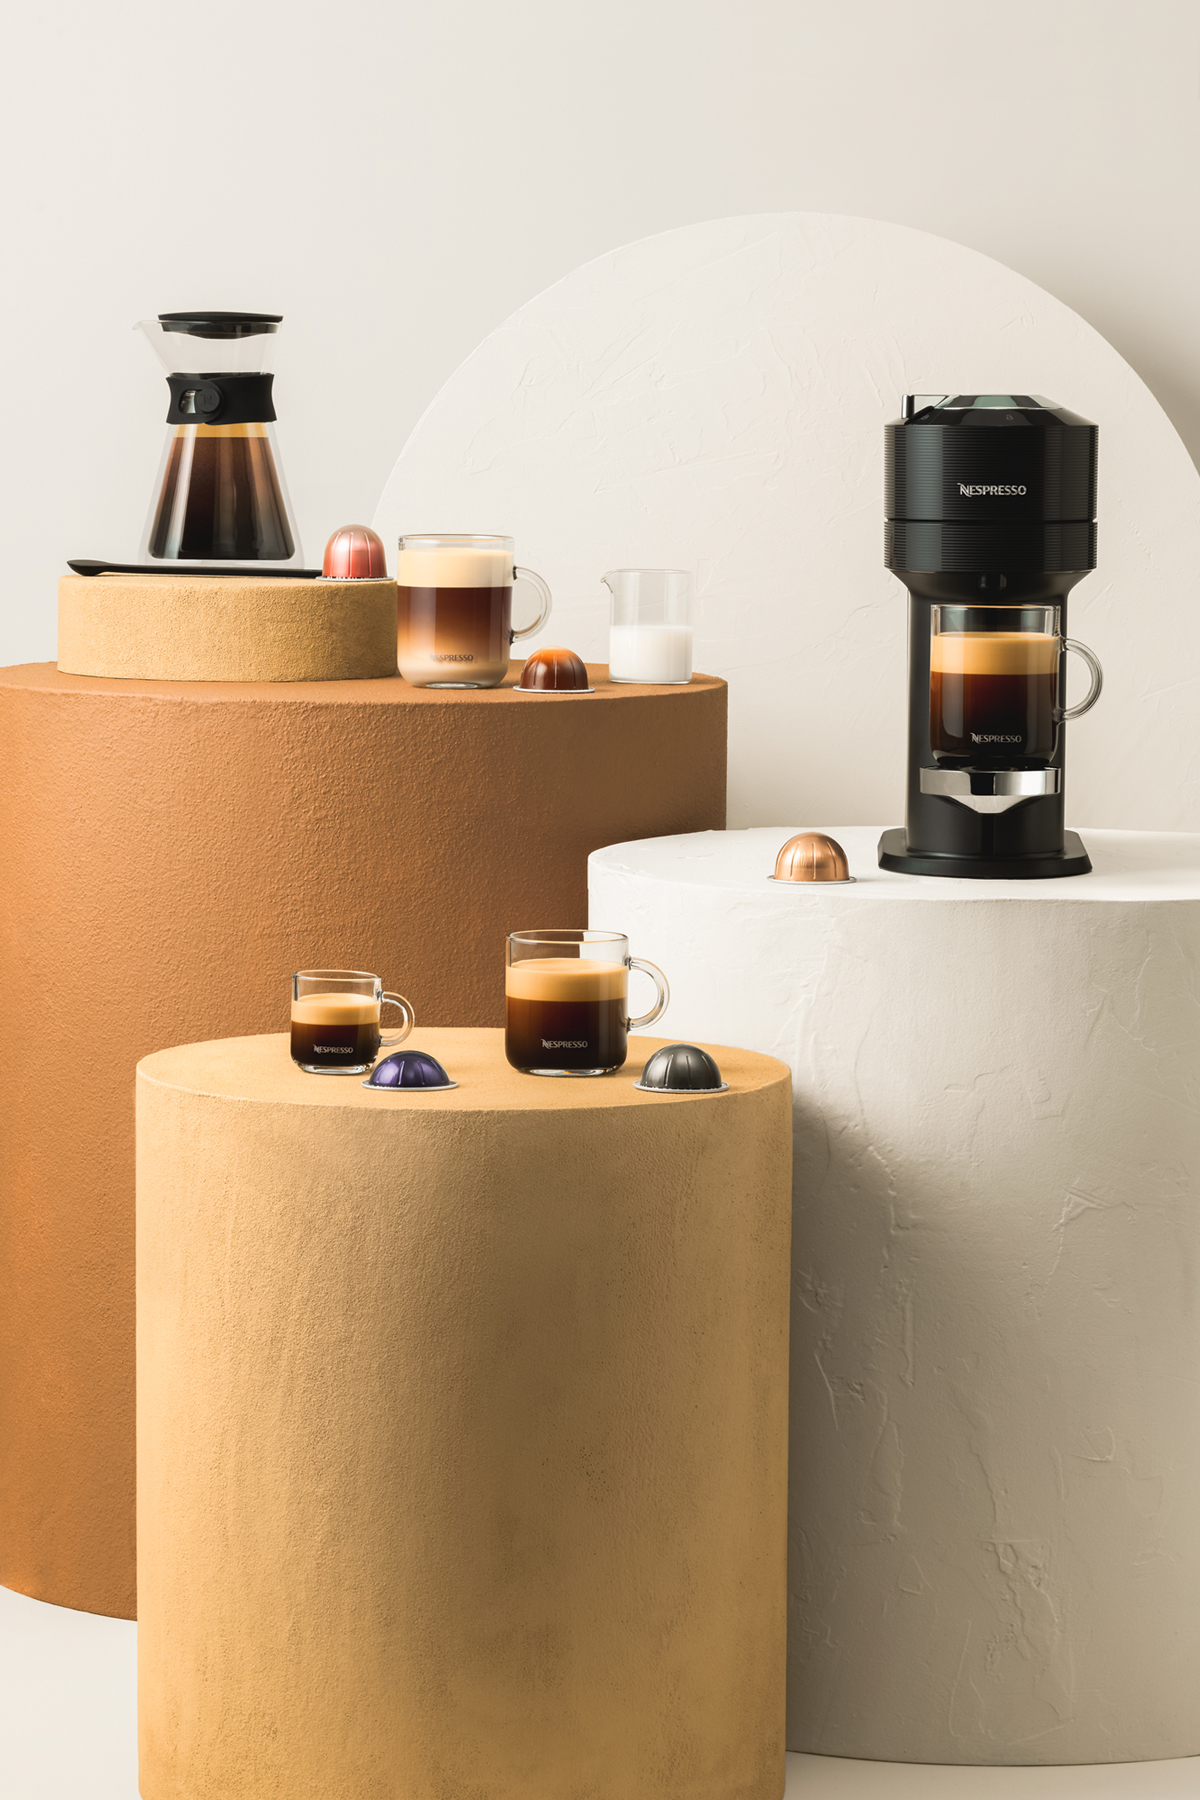 Zet met een druk op de knop je favoriete koffie met de nieuwste koffiemachine van Nespresso.